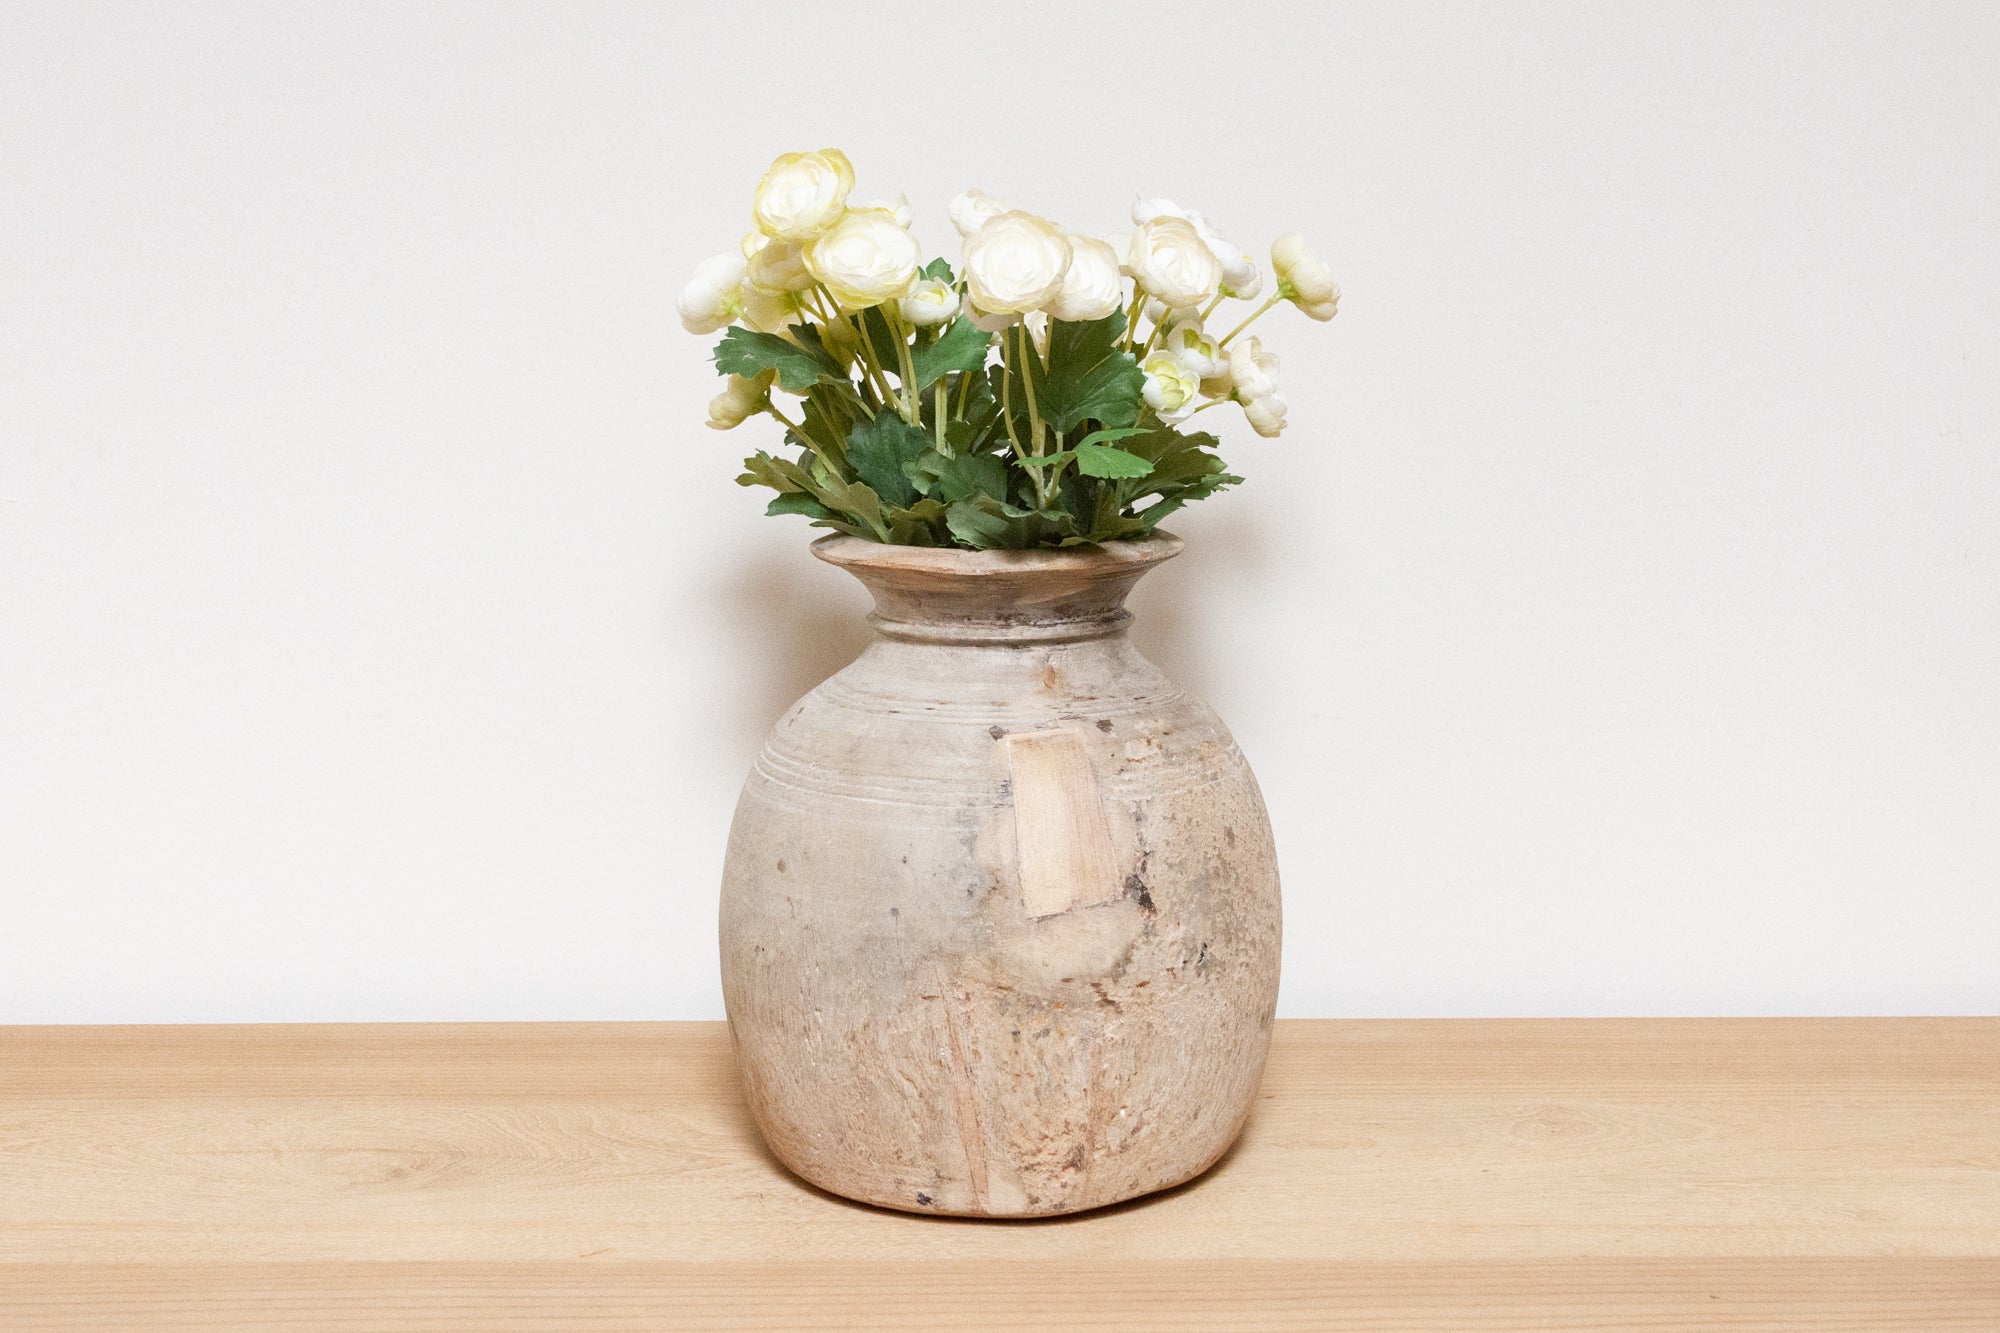 DE-COR | Ispirazione globale, Antico vaso di legno indiano - Mina